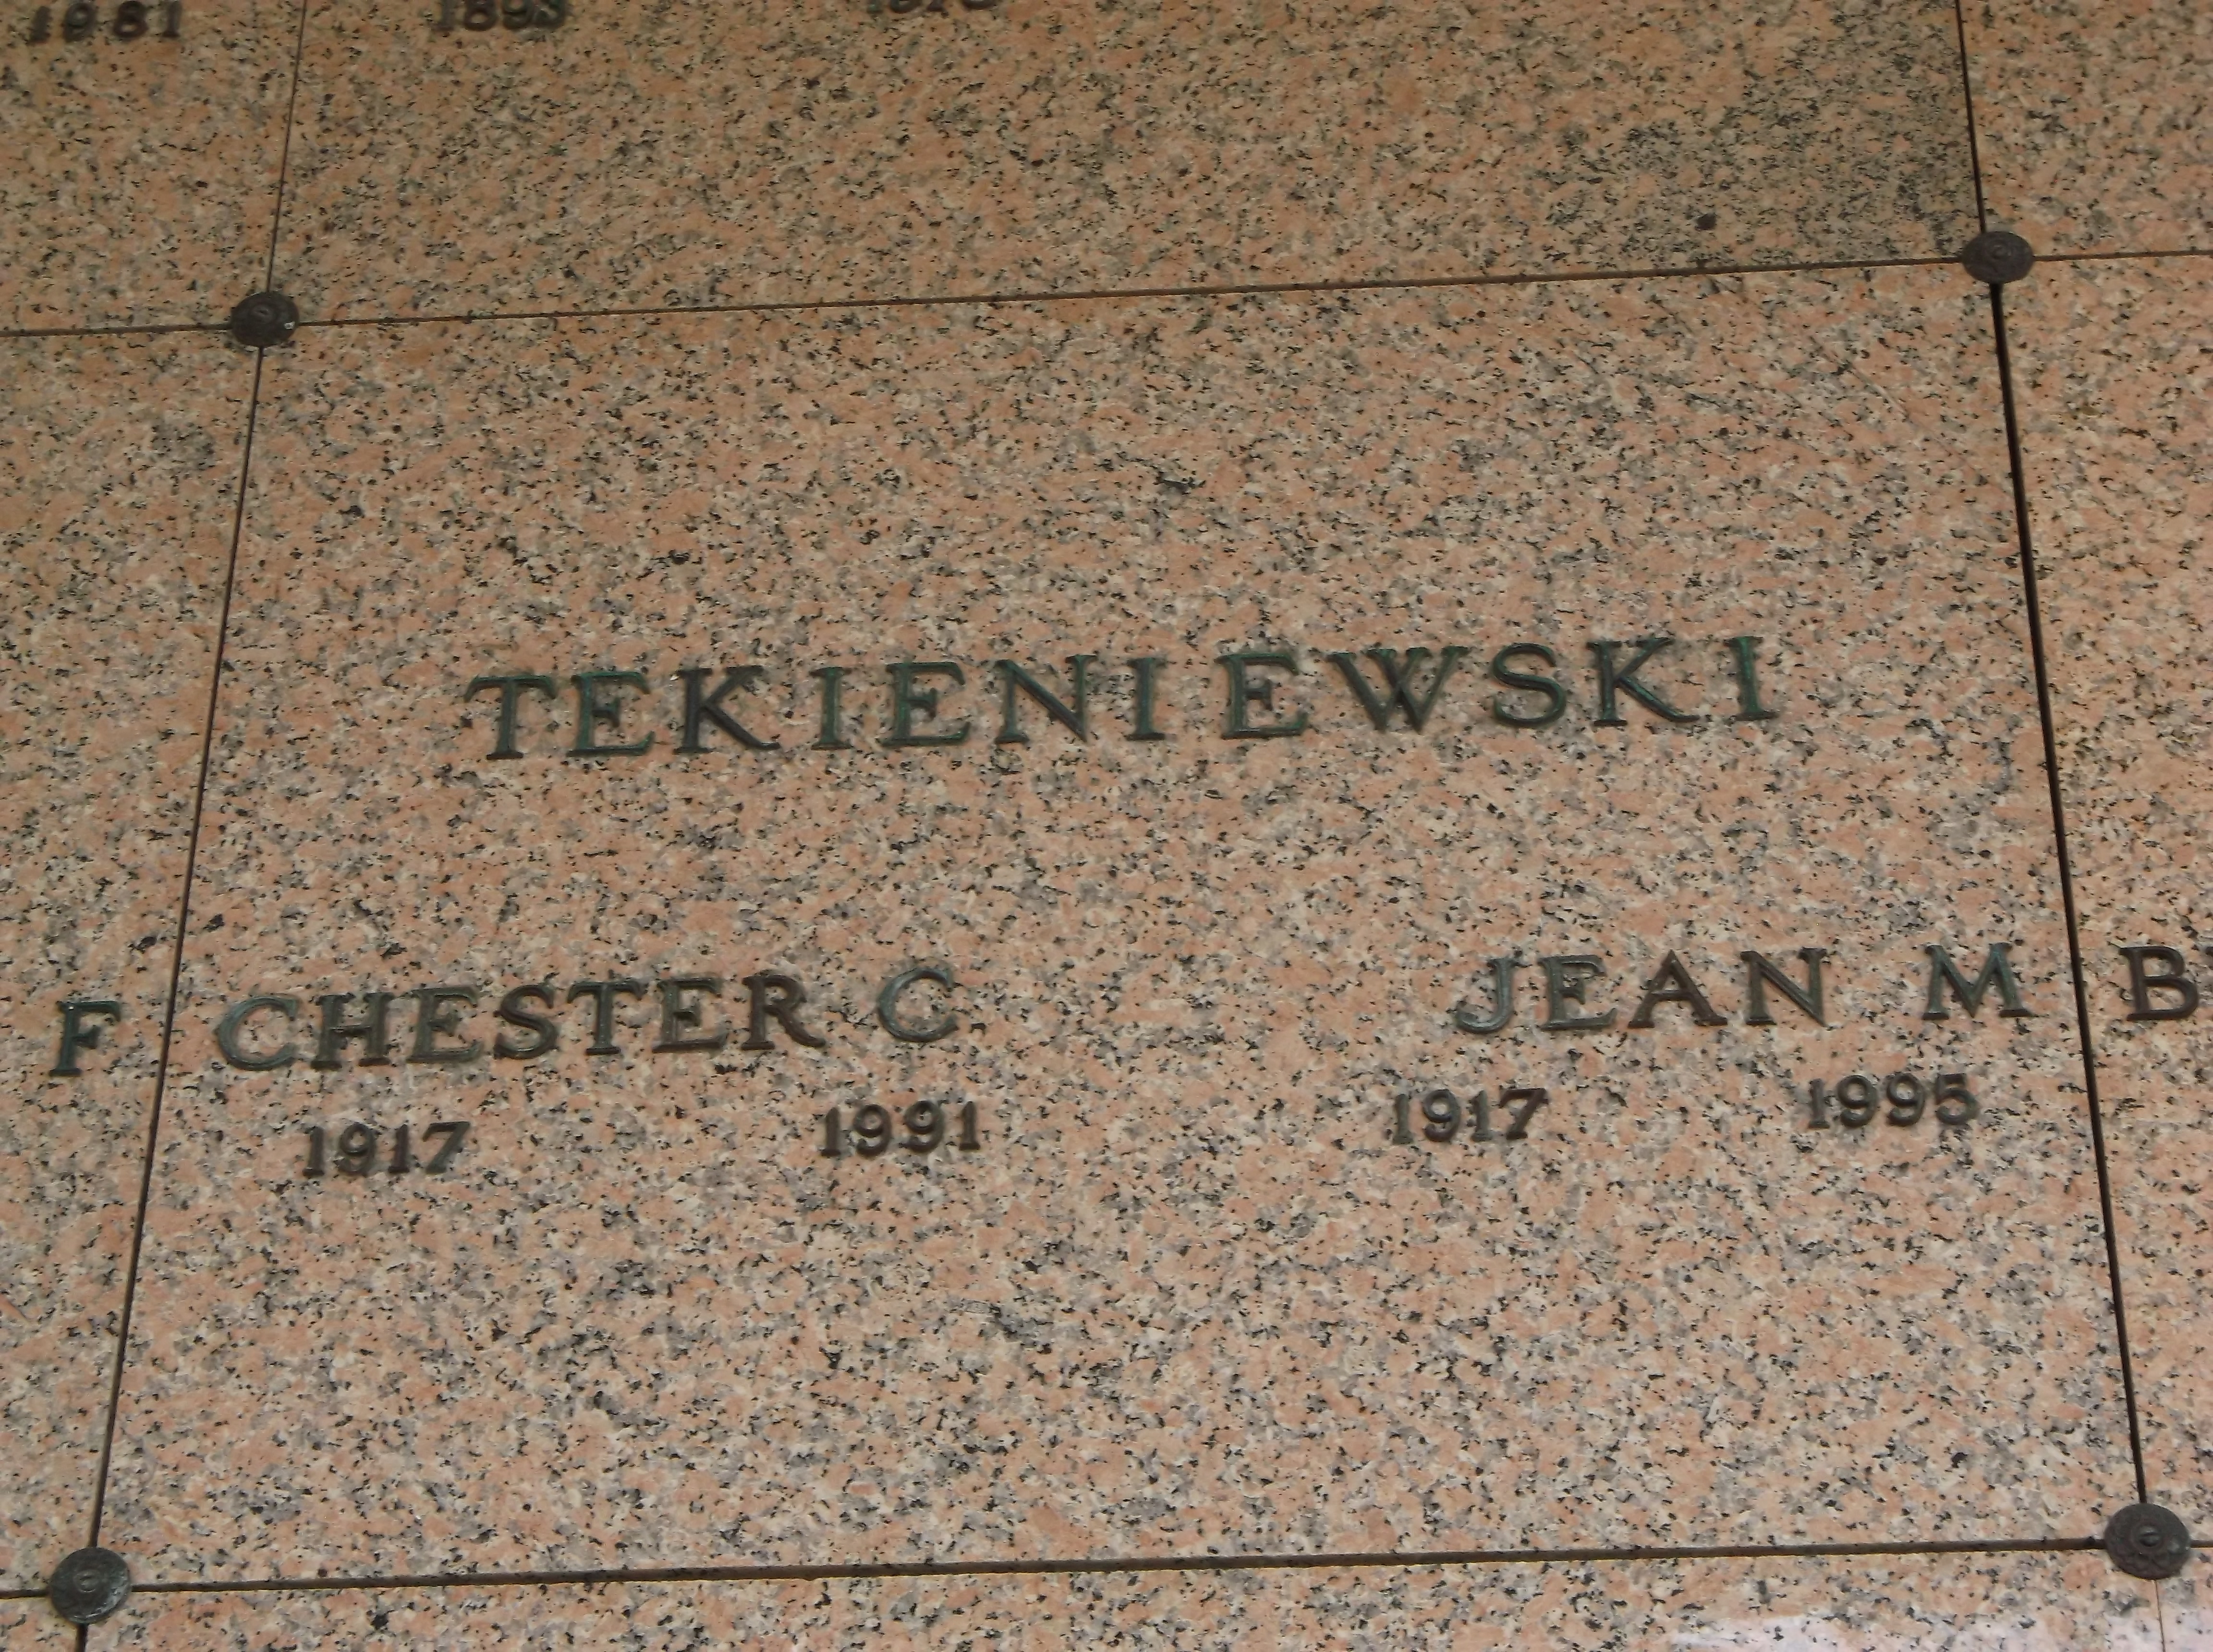 Jean M Tekieniewski